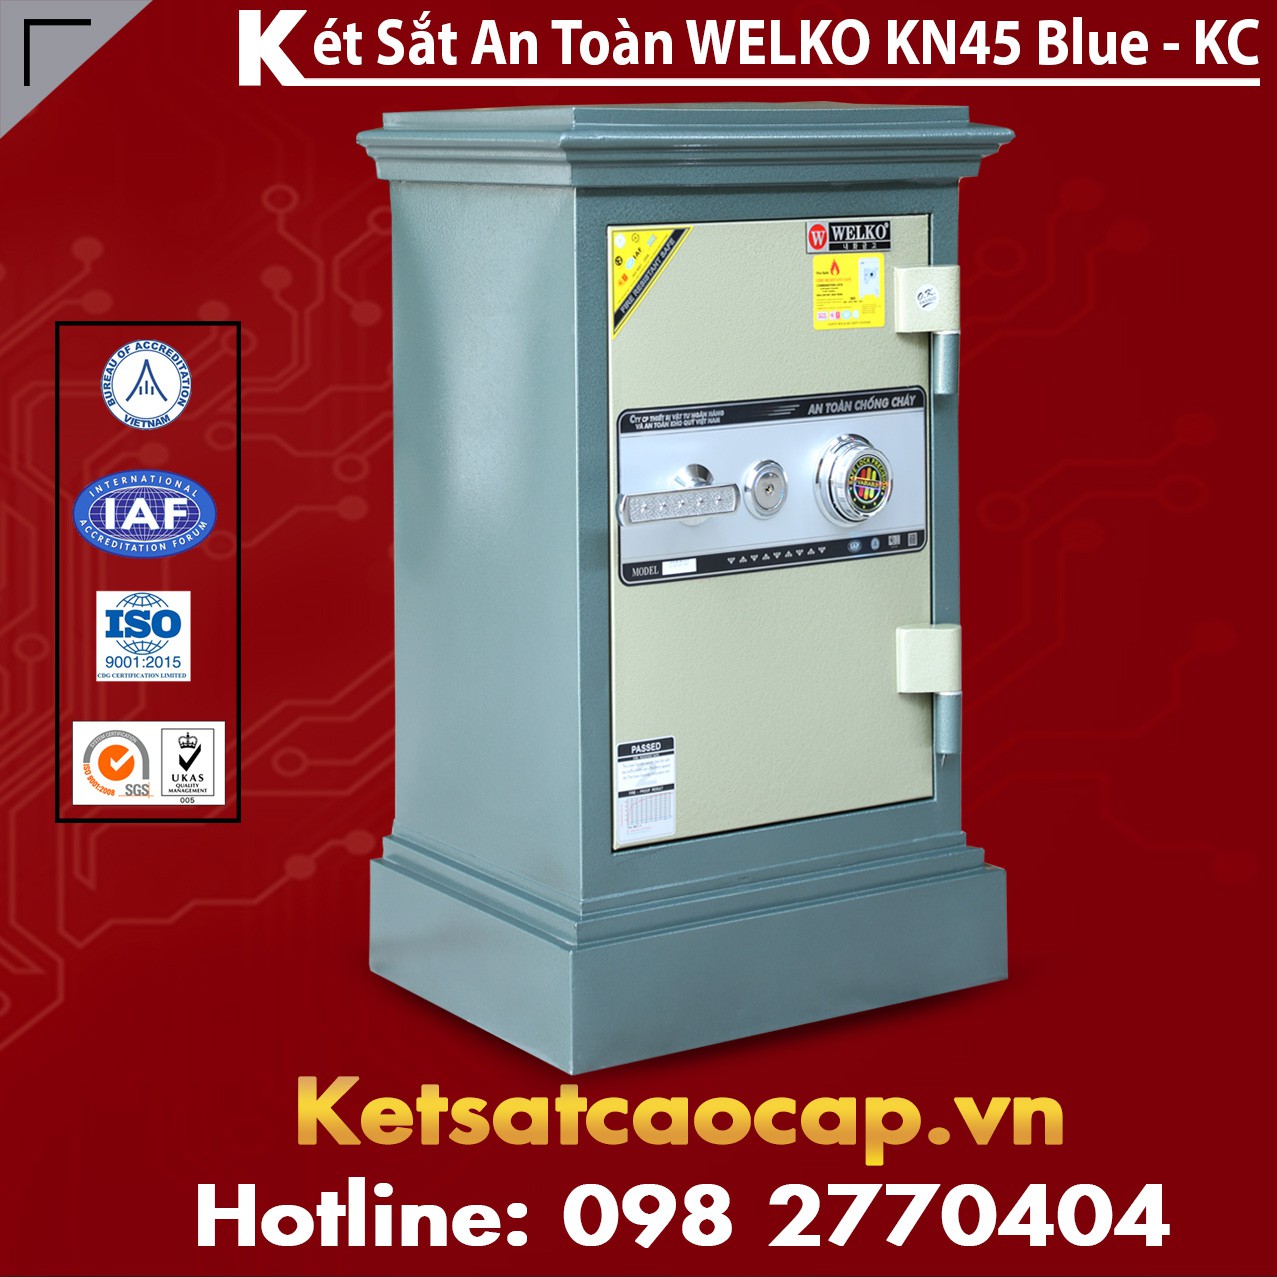 cửa hàng bán két sắt an toàn welkosafe cho văn phòng ở tphcm